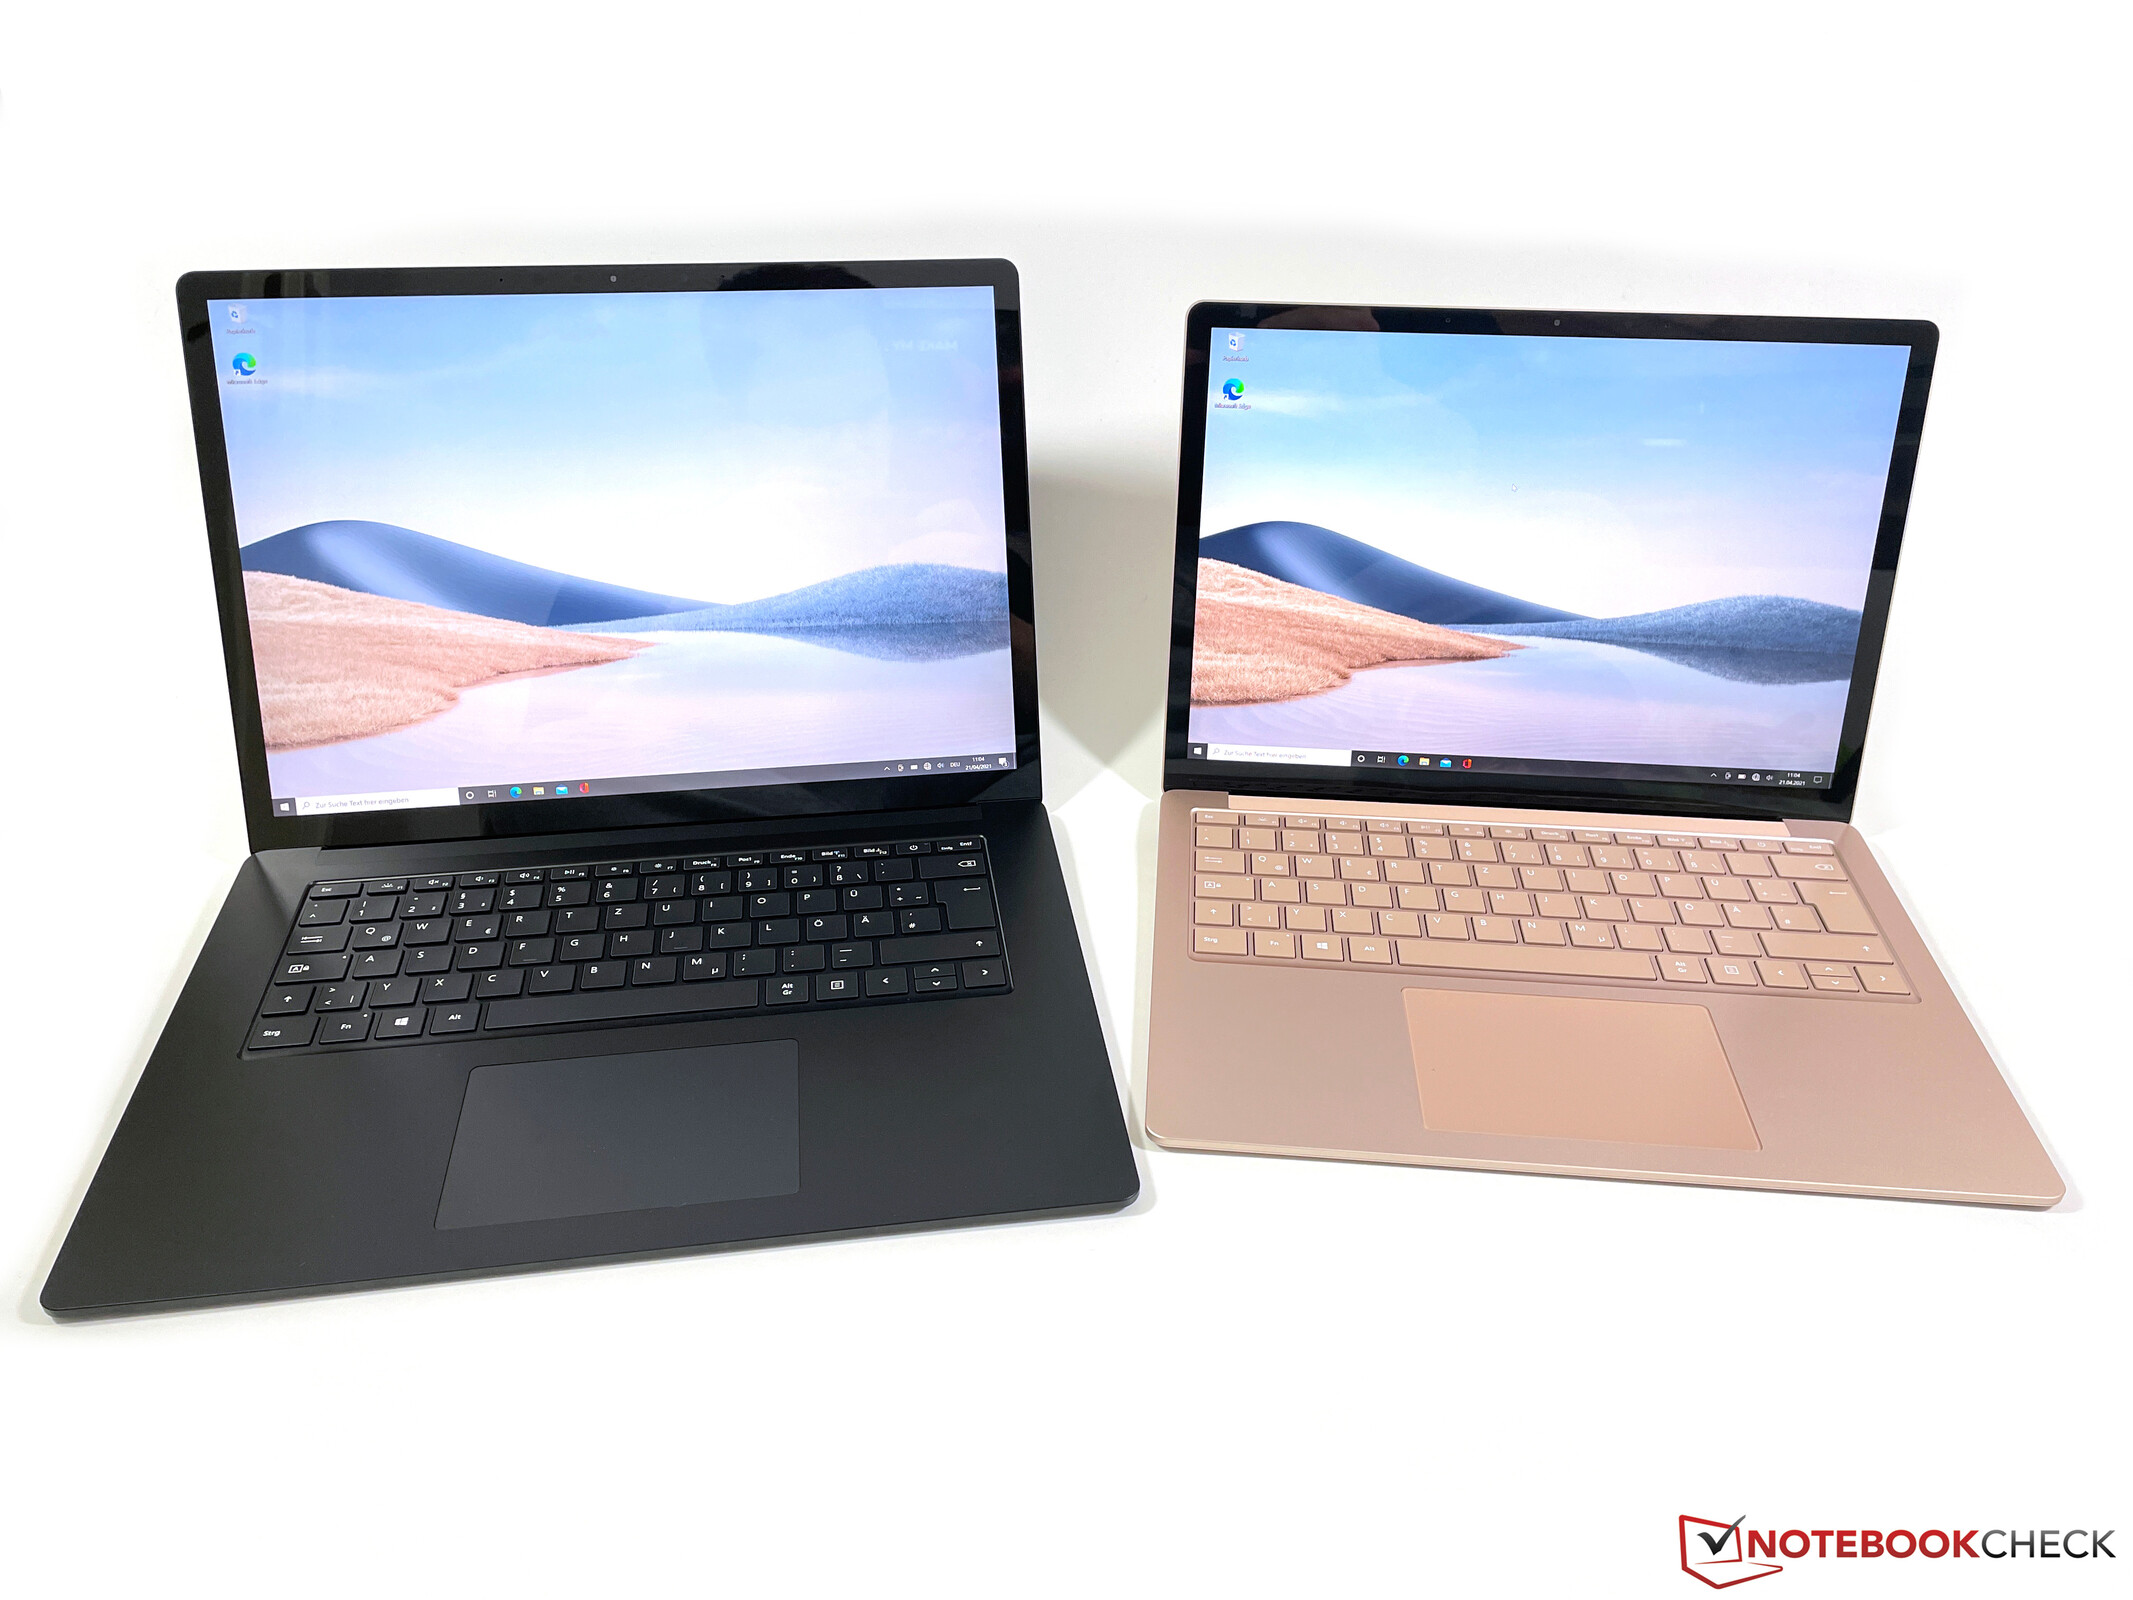 優れた品質 Microsoft Surface Laptop 4 - ノートPC - hlt.no